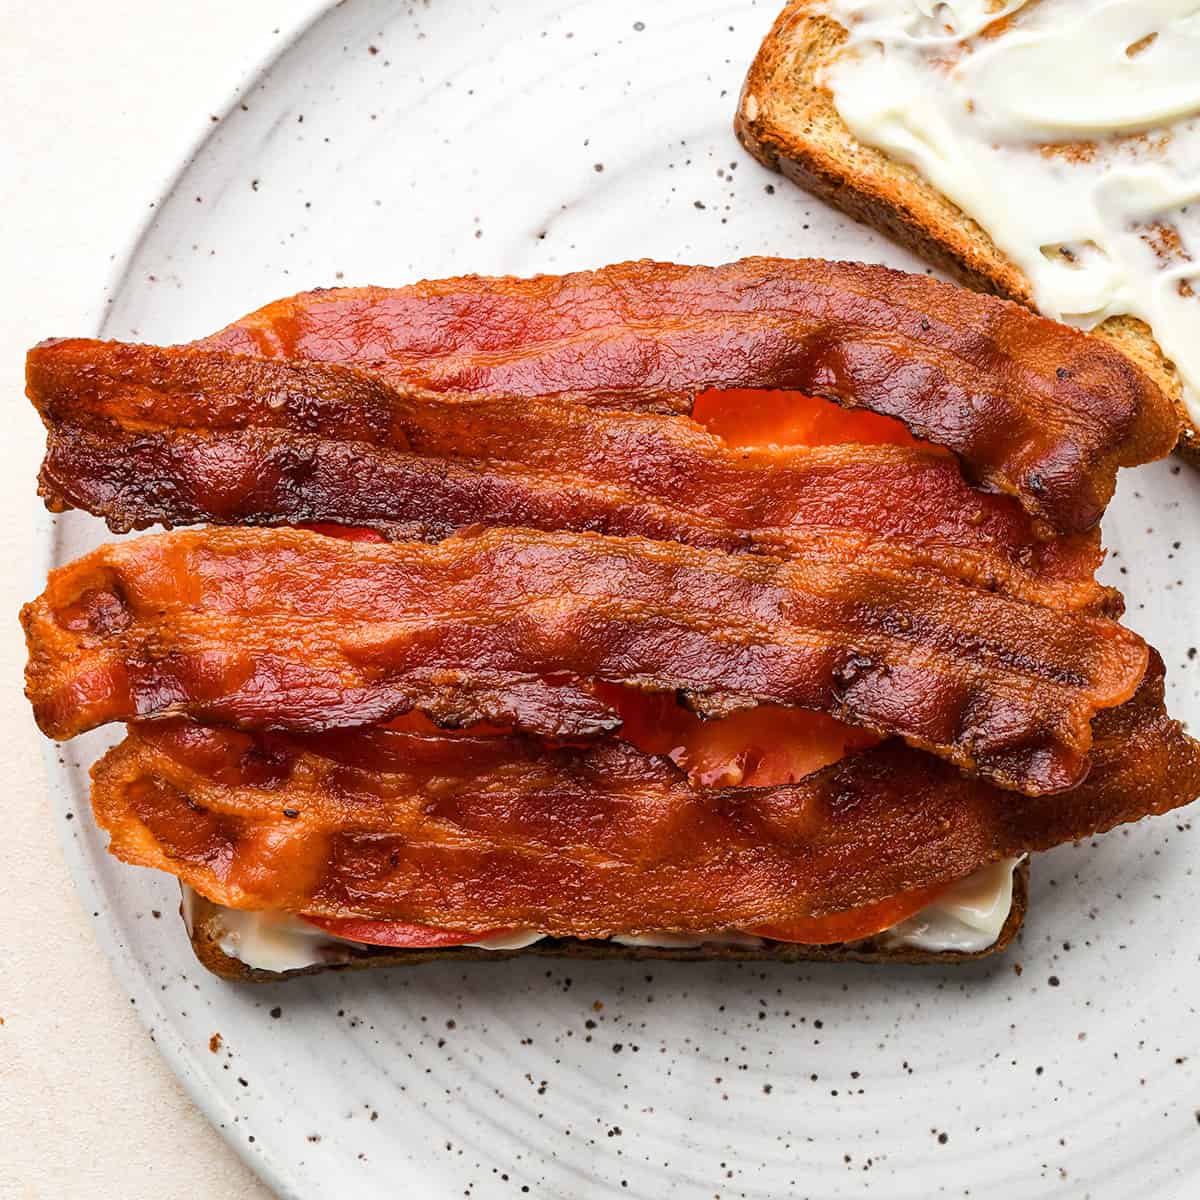 assembling a BLT sandwich - adding bacon